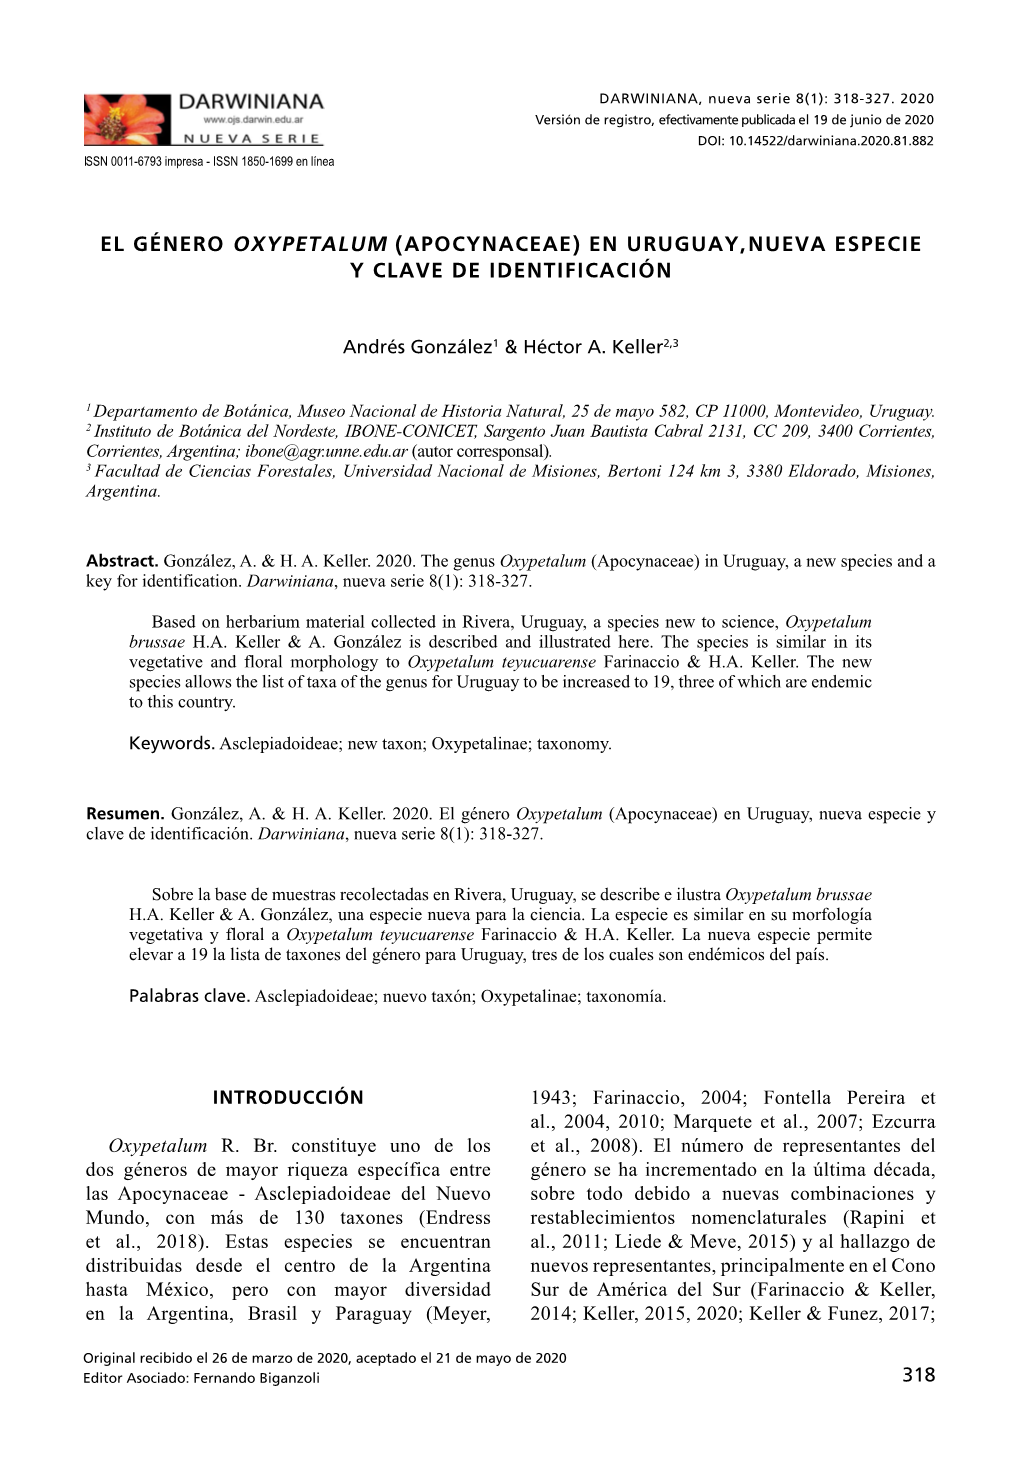 El Género Oxypetalum (Apocynaceae) En Uruguay, Nueva Especie Y Clave De Identificación